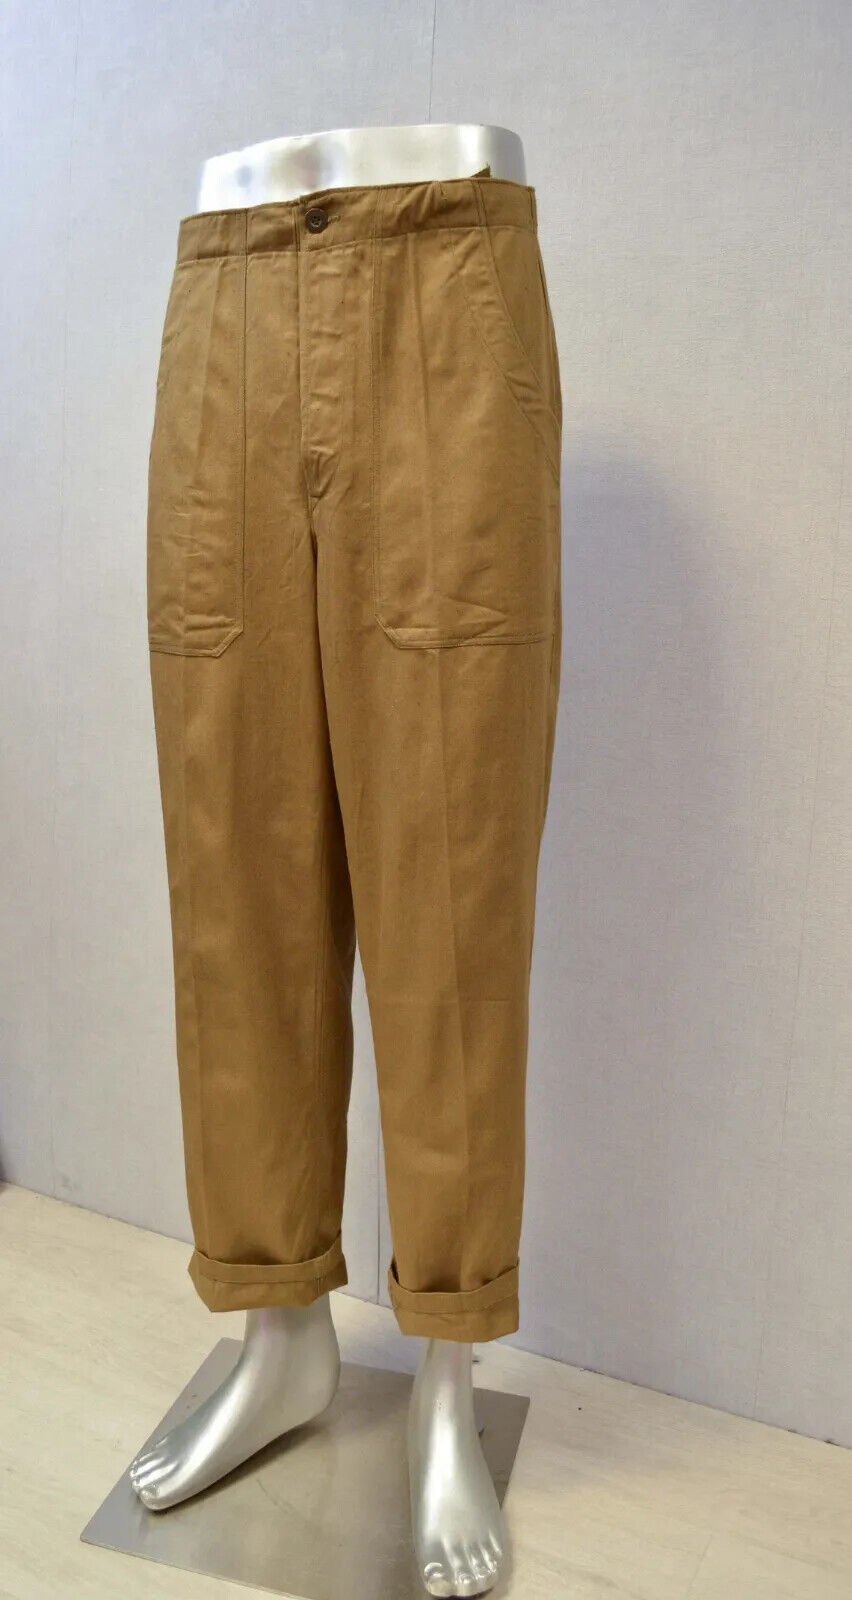 Vintage Work Pants Cotton